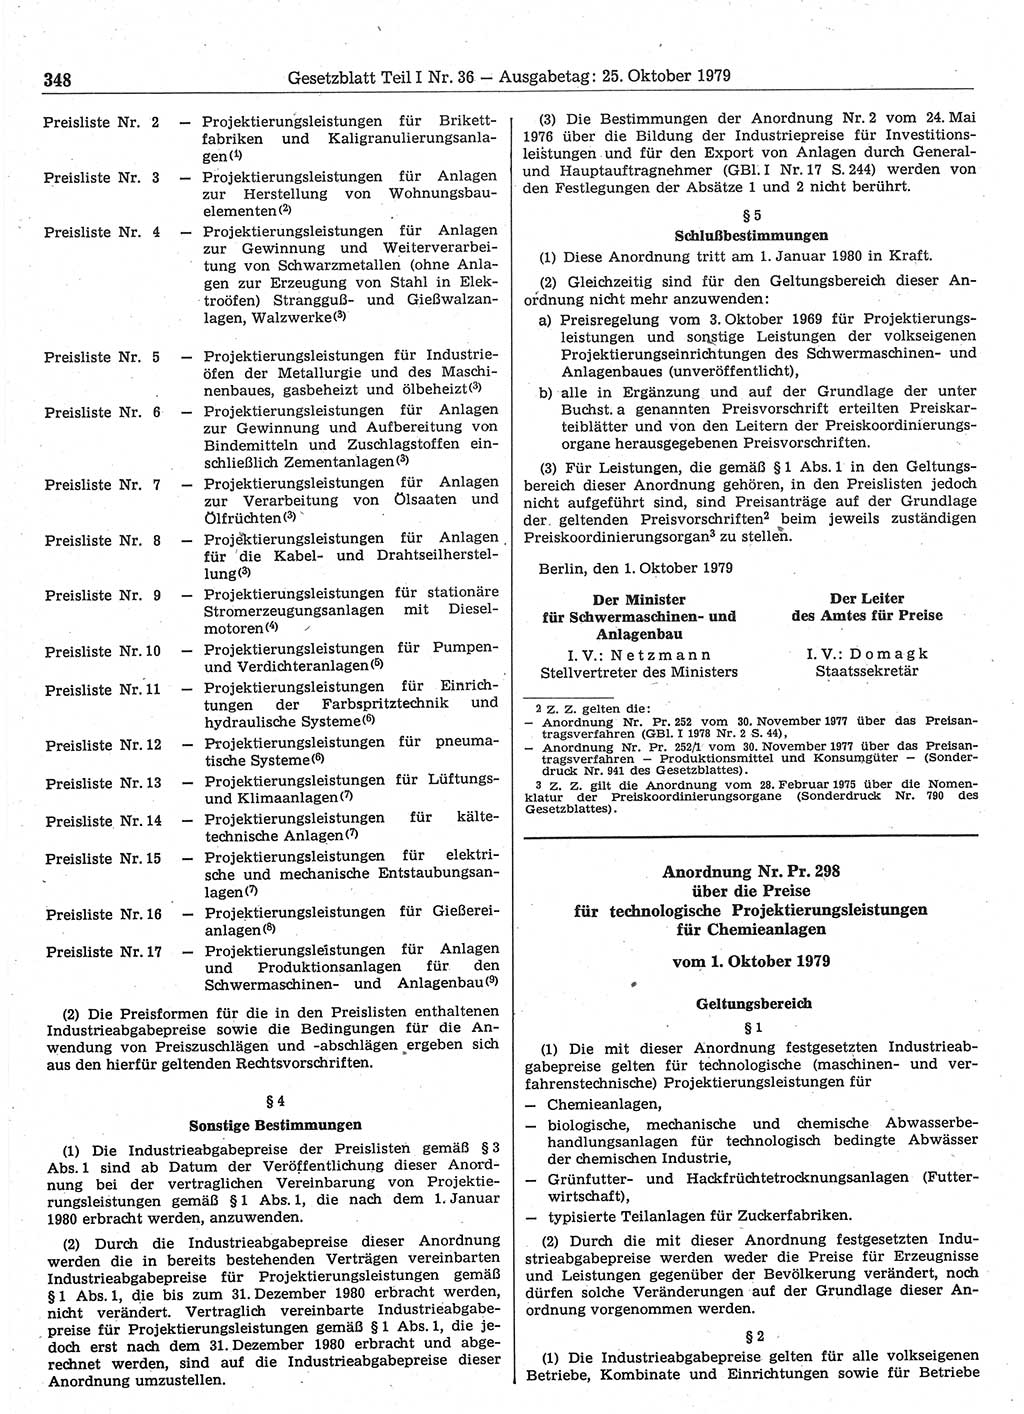 Gesetzblatt (GBl.) der Deutschen Demokratischen Republik (DDR) Teil Ⅰ 1979, Seite 348 (GBl. DDR Ⅰ 1979, S. 348)